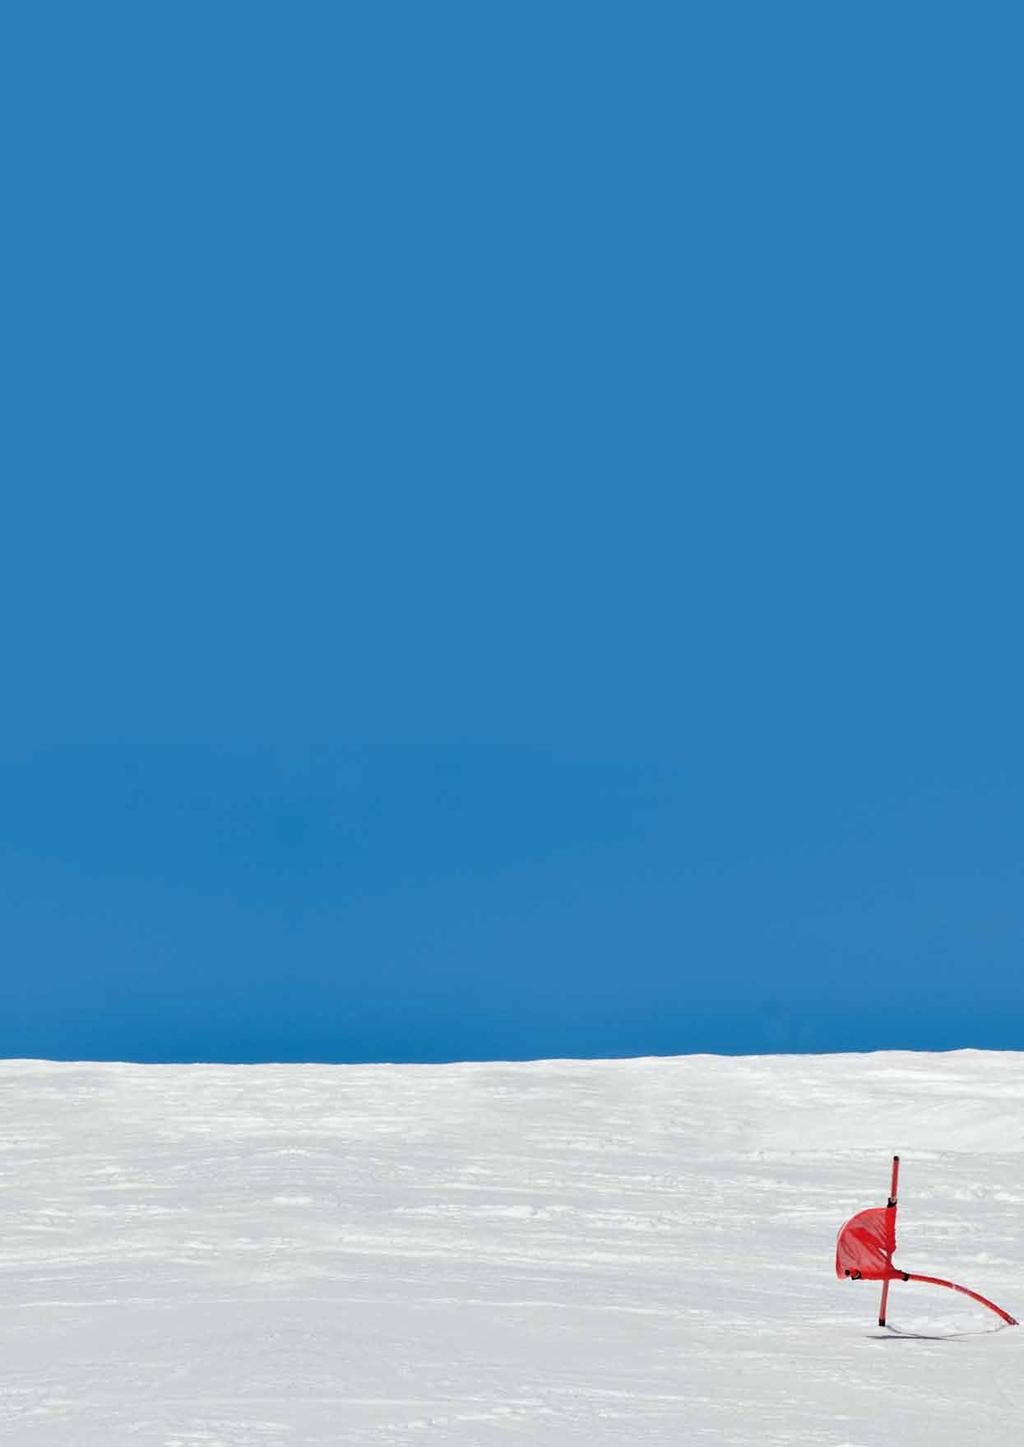 Liebe Kolleginnen, liebe Kollegen, hiermit laden wir wieder ganz herzlich alle Skisportler alpin und/oder nordisch sowie deren Betreuer und Zuschauer zu unseren 19. Internationalen offenen nach ein.